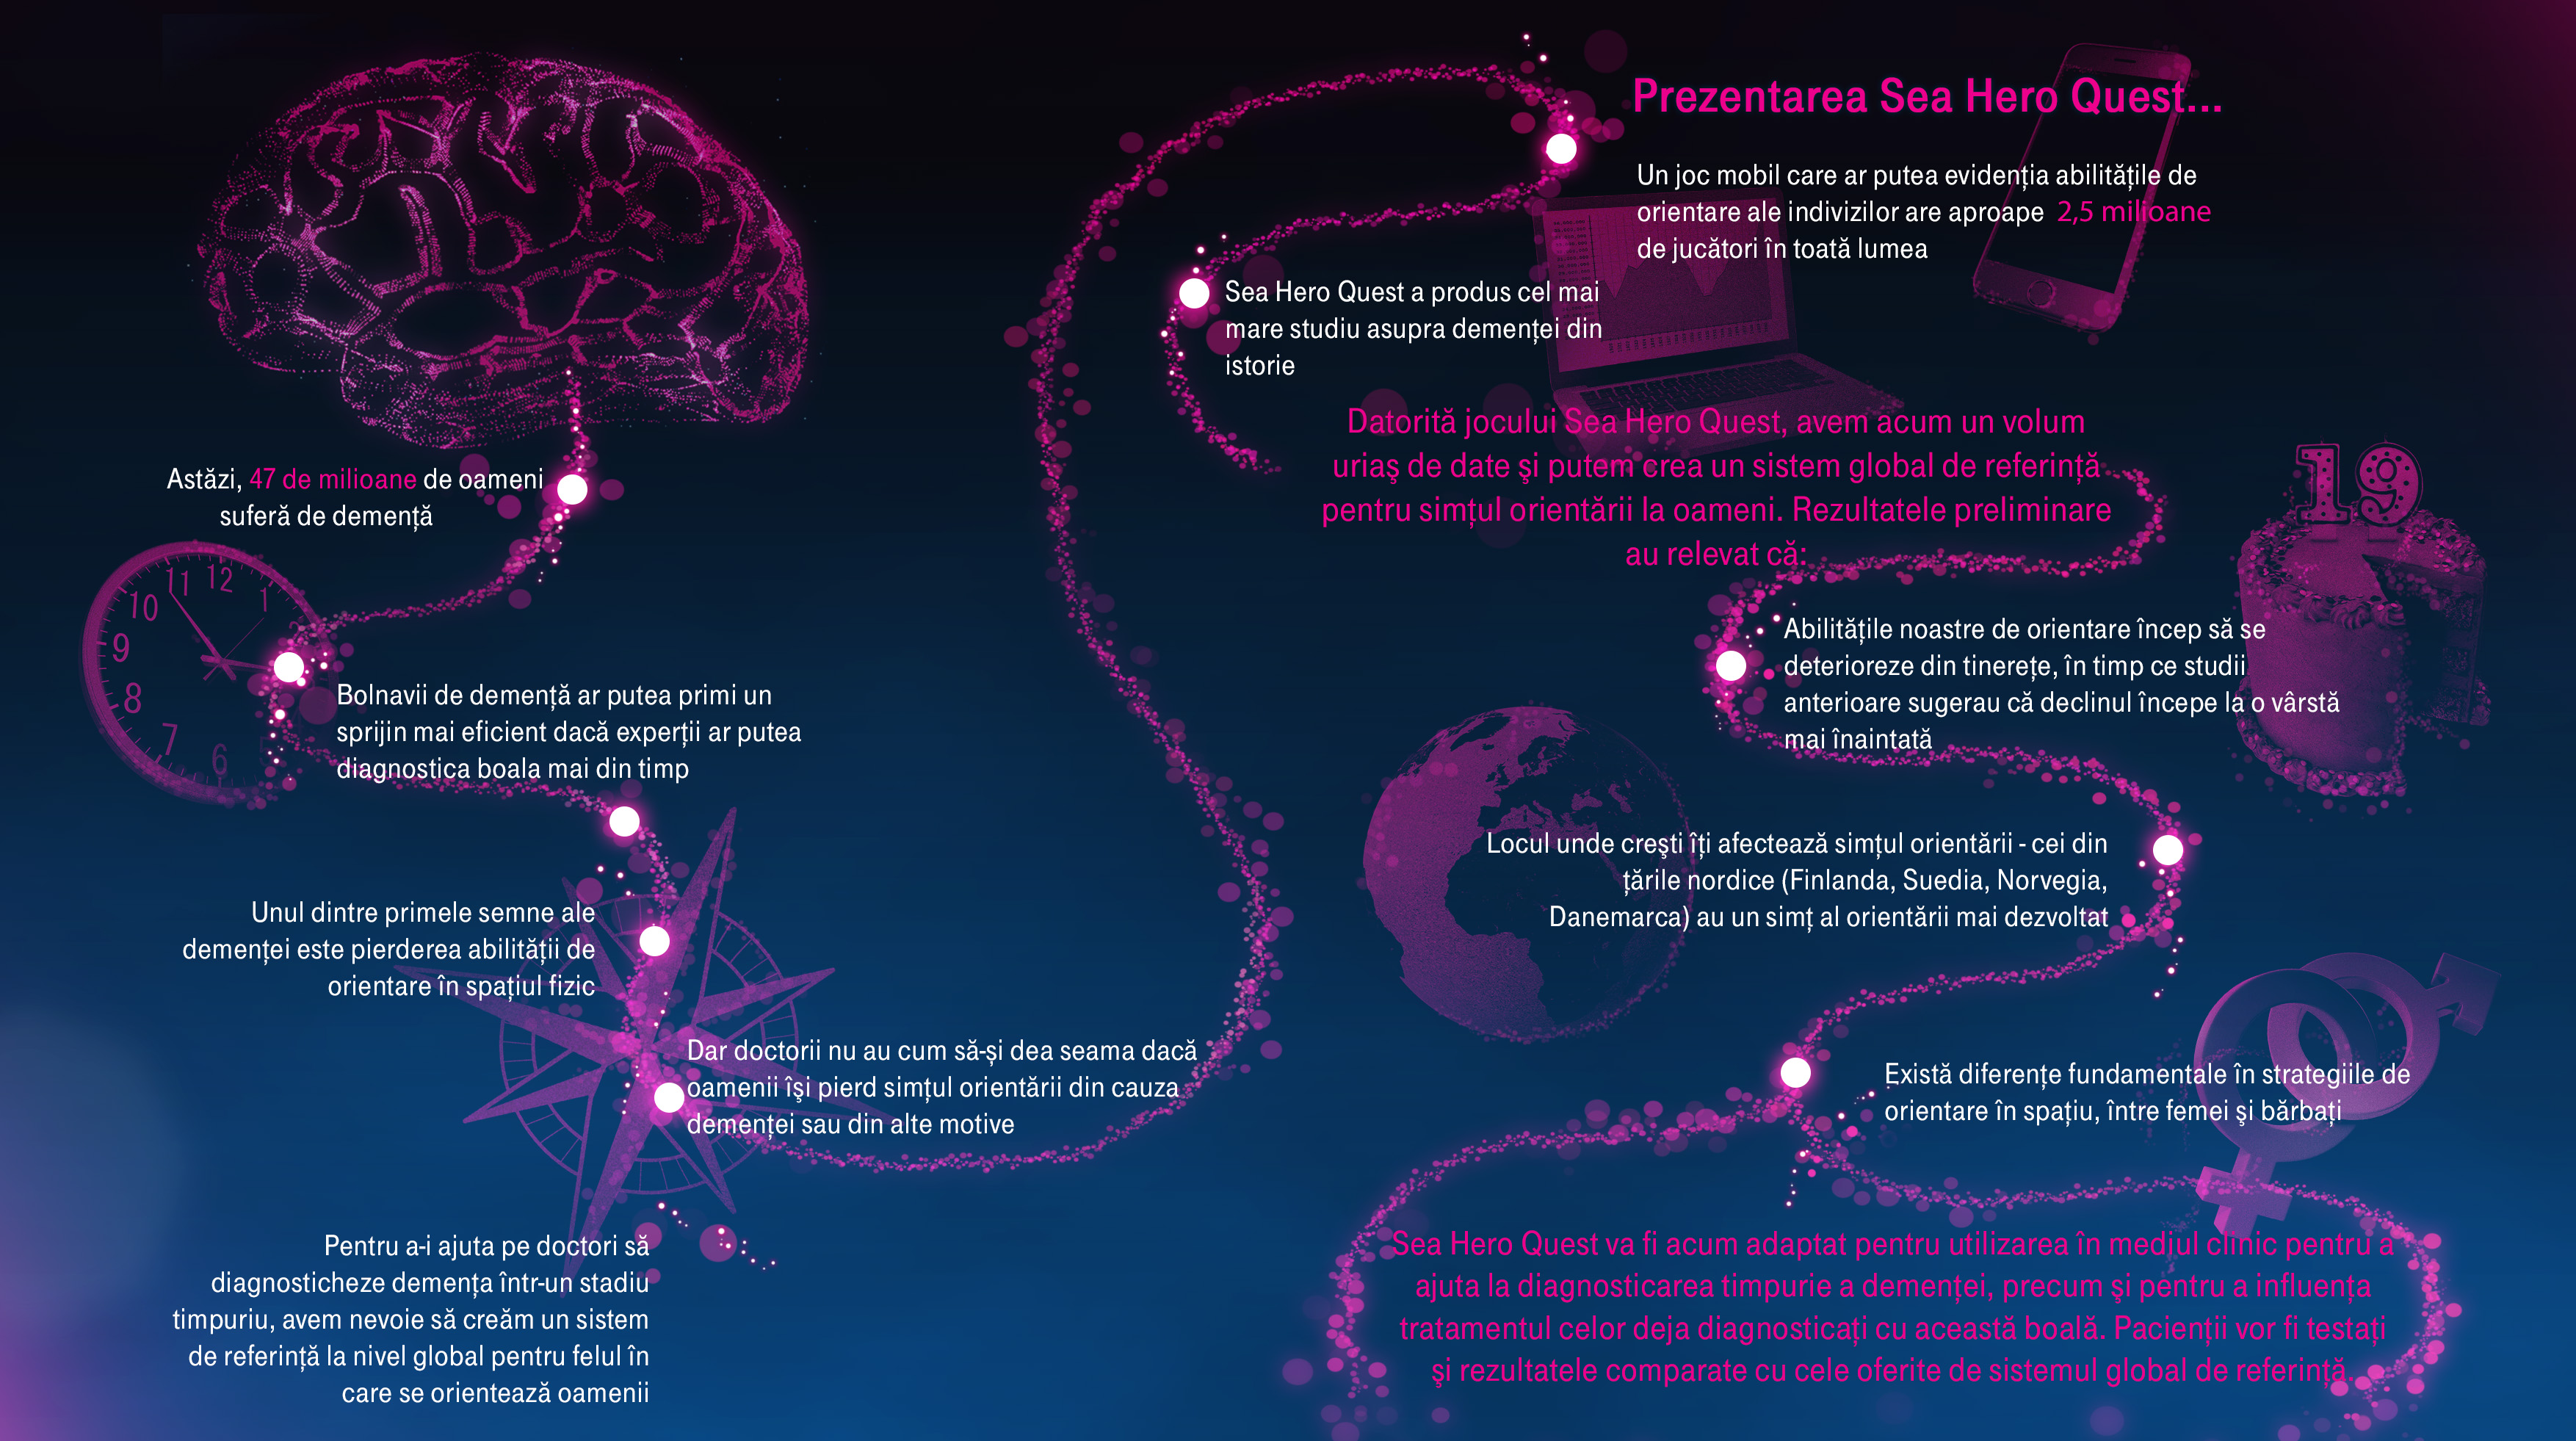 Jocul Sea Hero Quest dezvoltat de Deutsche Telekom stabileşte noi standarde în cercetarea în domeniul demenţei